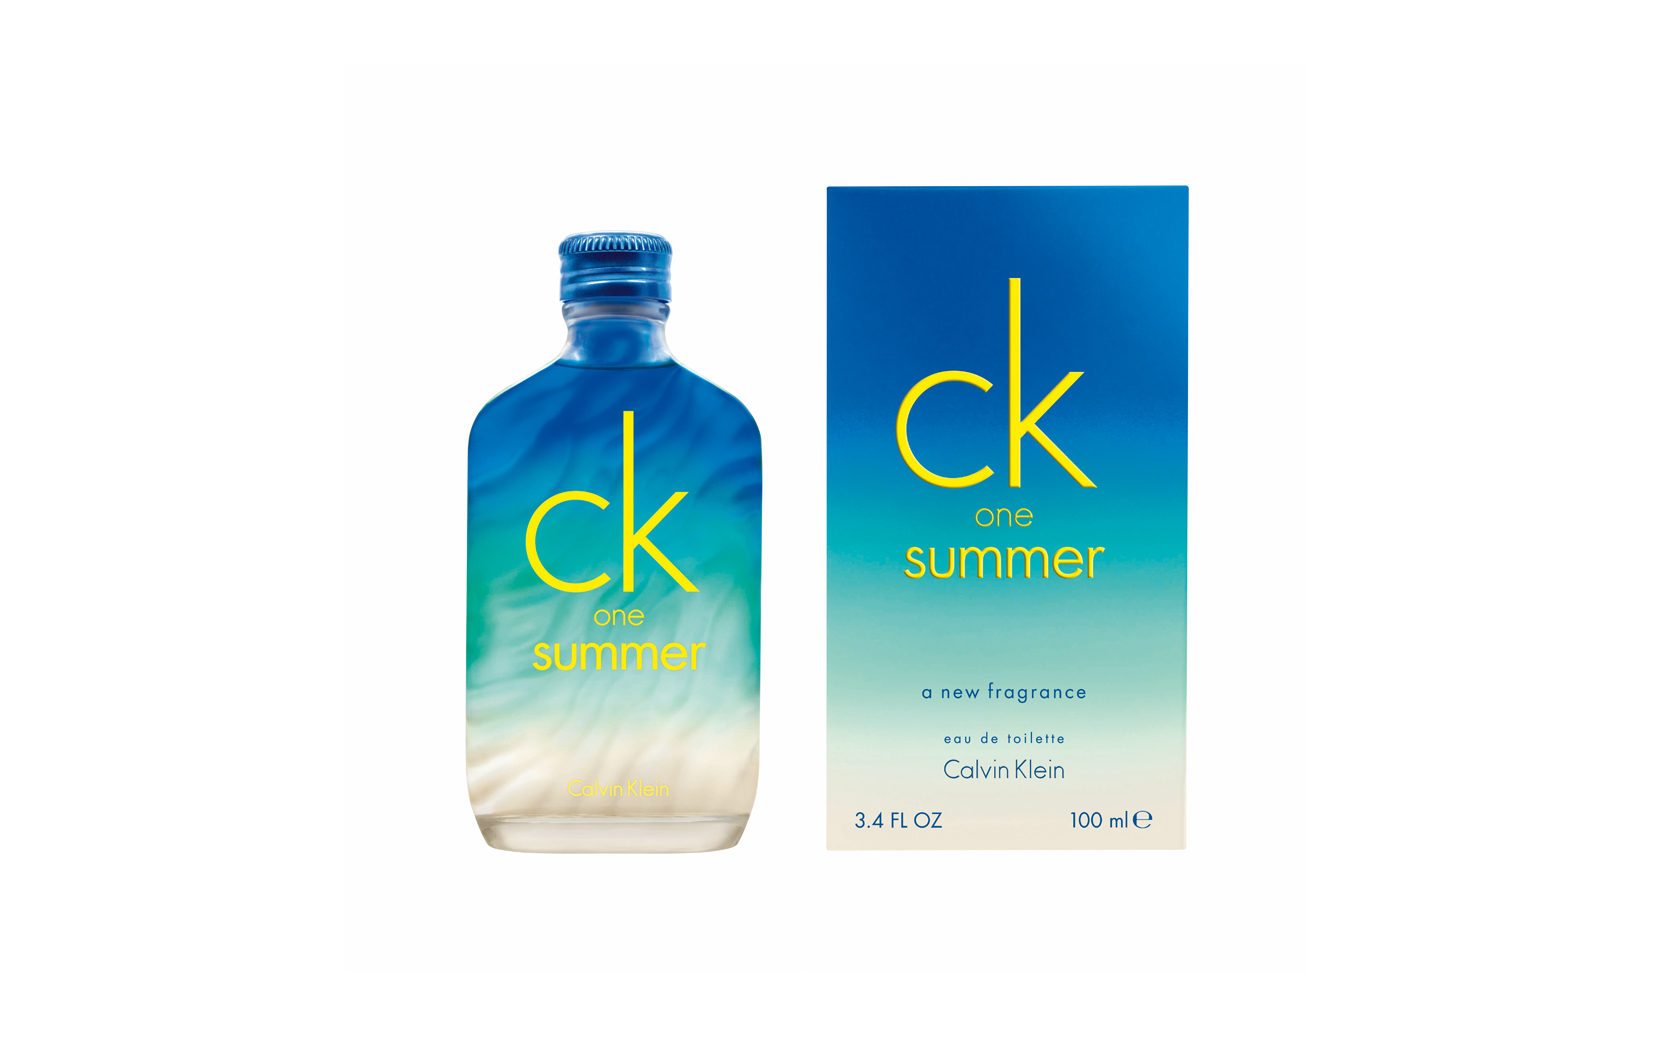 CK ONE SUMMER, Calvin Klein